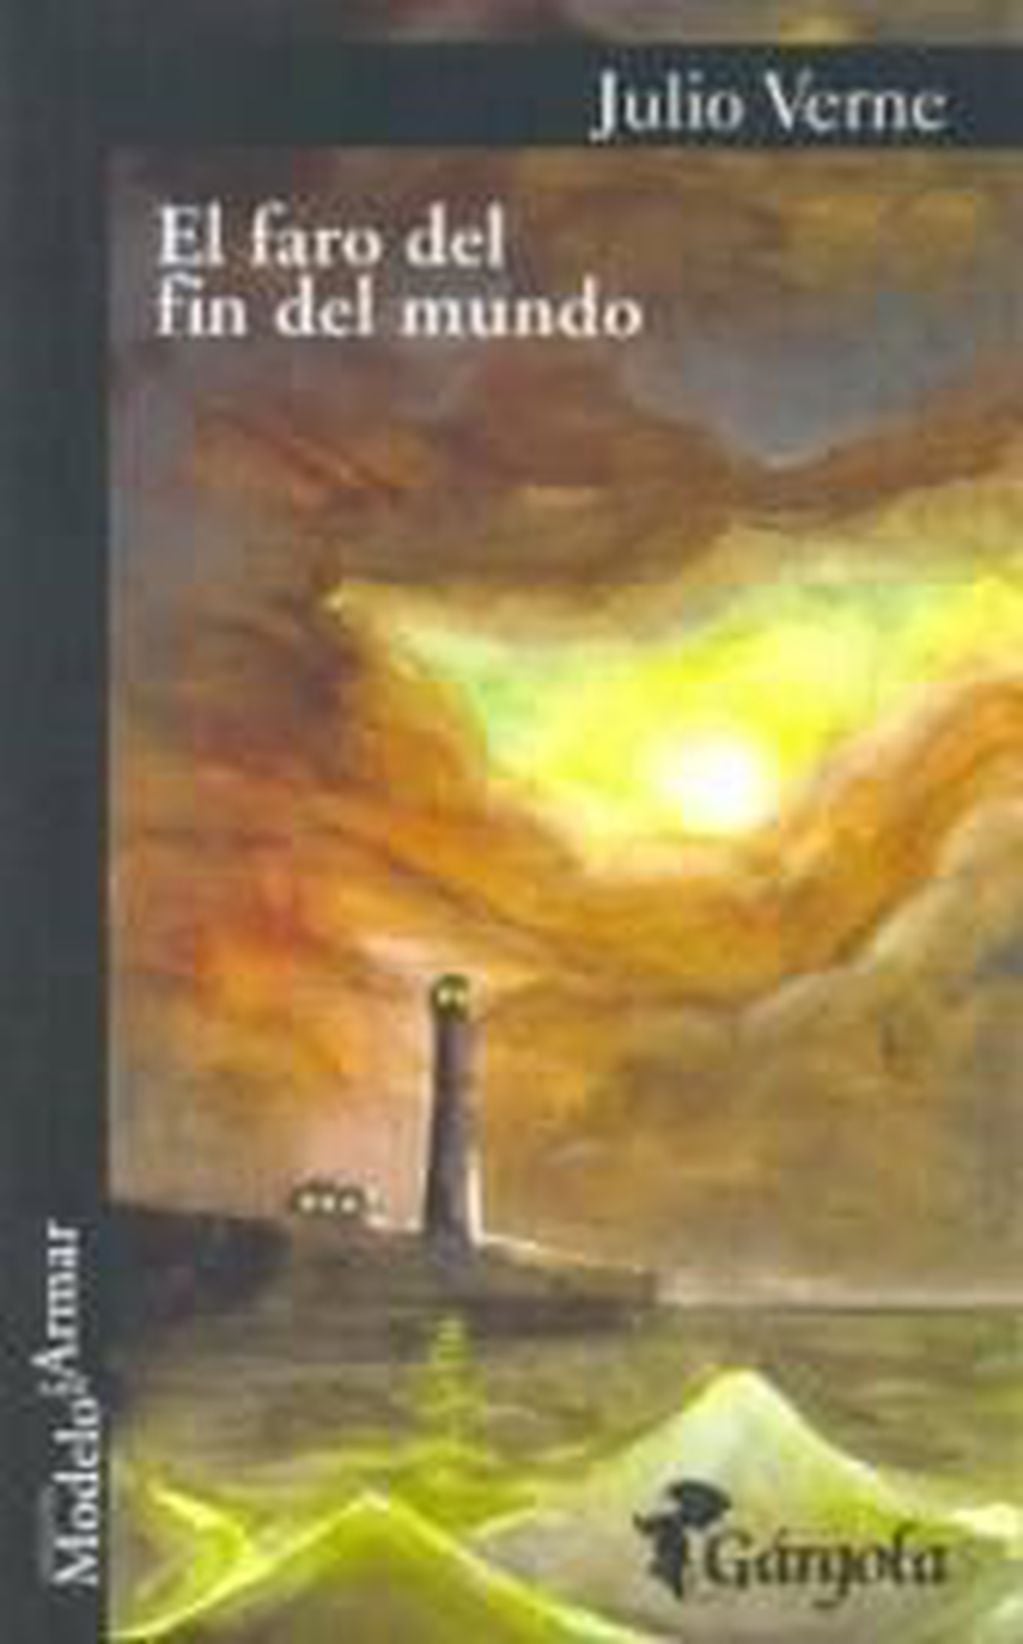 Libro "Faro del Fin del Mundo" Julio Verne